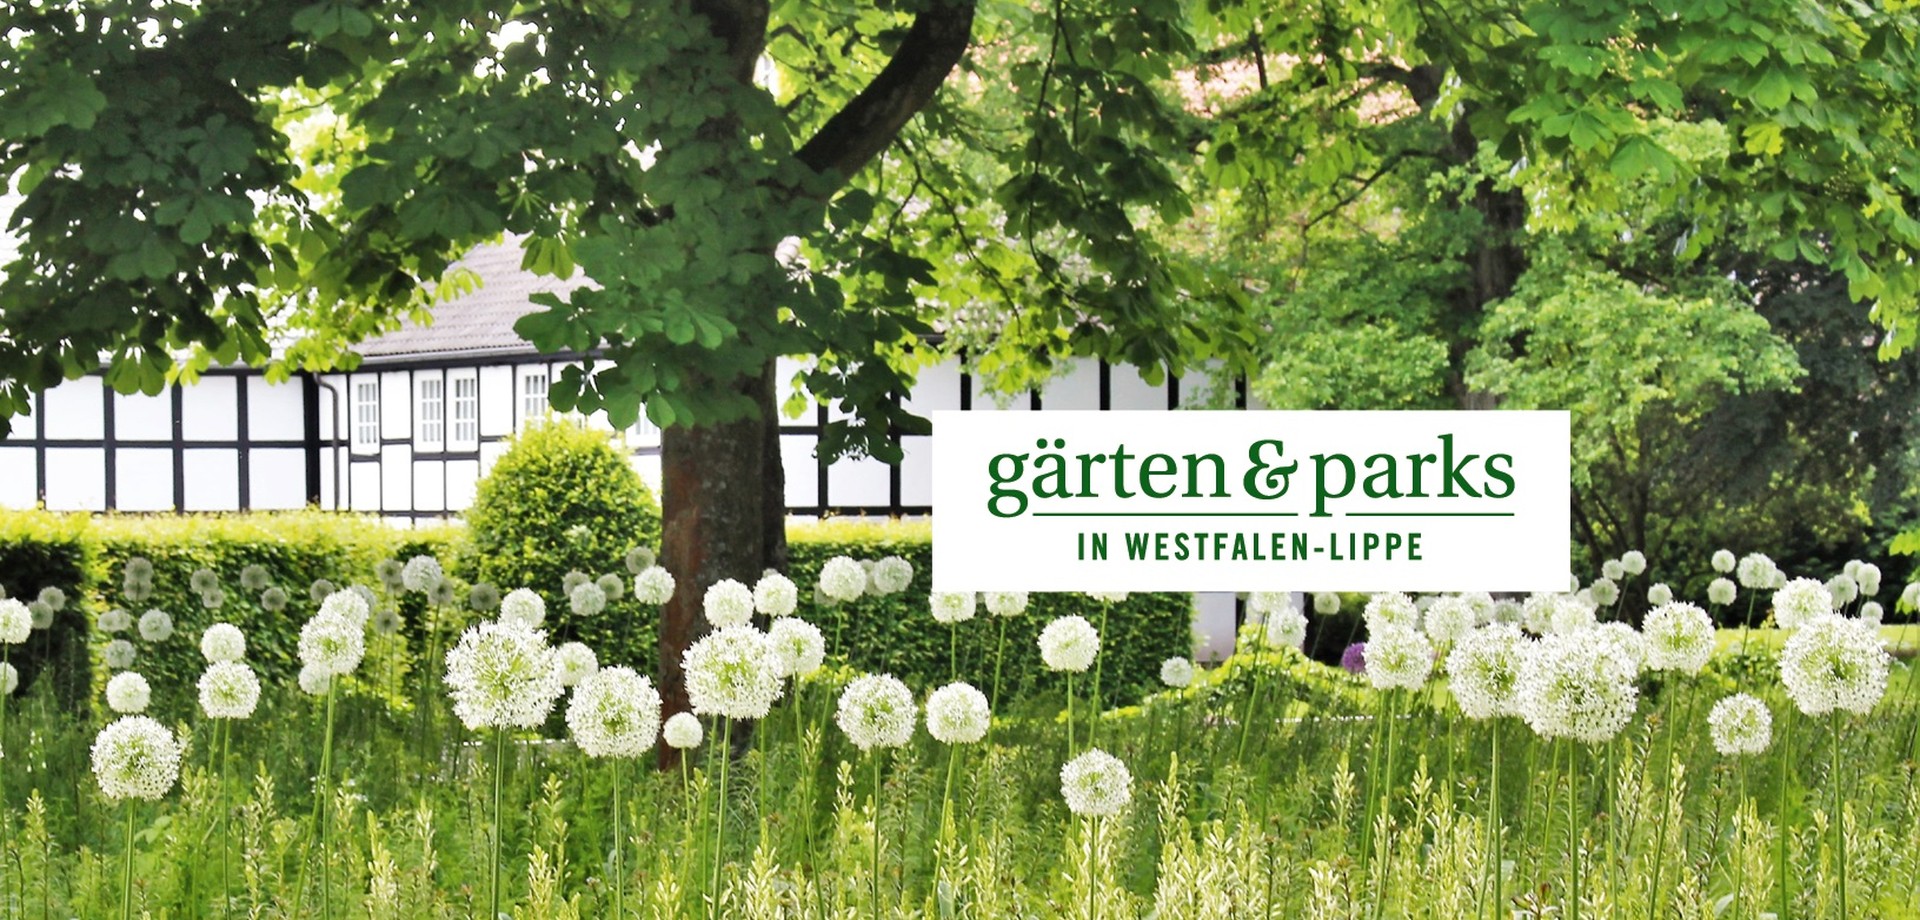 Zierlauch im Gärflichen Park Bad Driburg, "Gärten und Parks in Westfalen-Lippe"